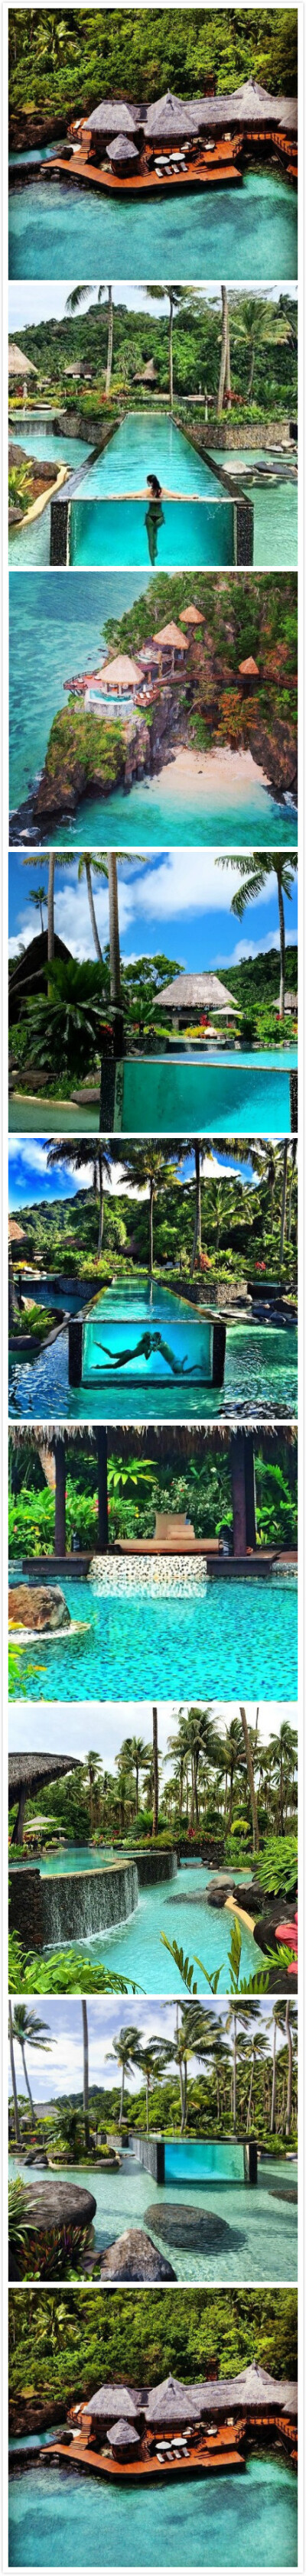 位于斐济的Laucala Island是世上最尊贵独特的度假村之一，精美的别墅全岛仅建有25间，全部配备独立泳池，绝对是蜜月度假的最佳选择！大家看看就好。。。